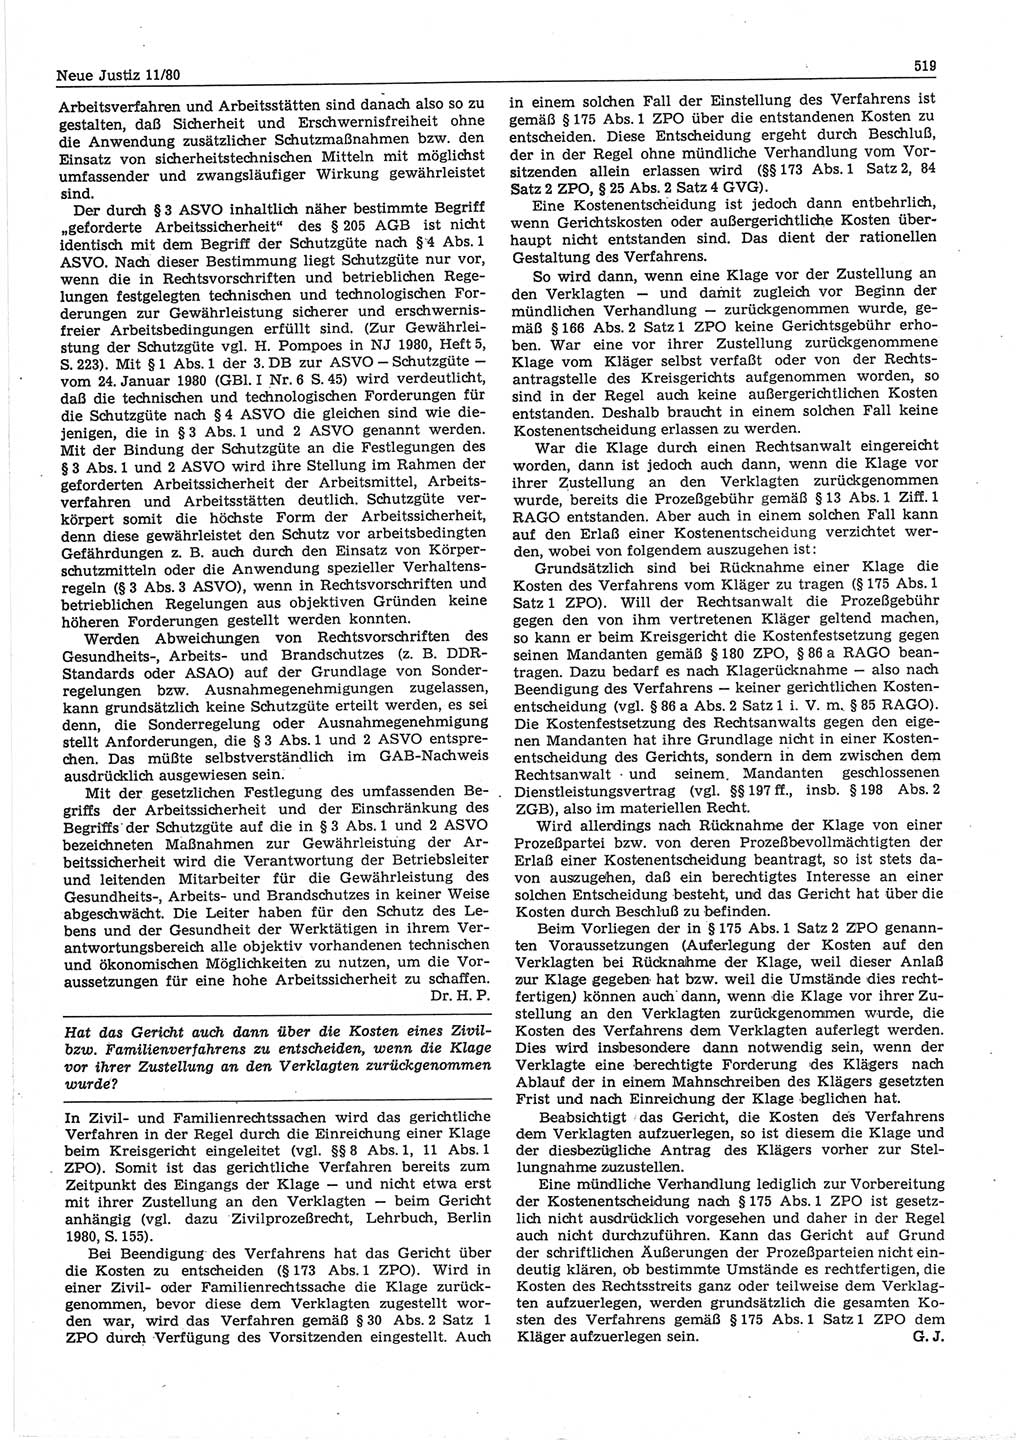 Neue Justiz (NJ), Zeitschrift für sozialistisches Recht und Gesetzlichkeit [Deutsche Demokratische Republik (DDR)], 34. Jahrgang 1980, Seite 519 (NJ DDR 1980, S. 519)